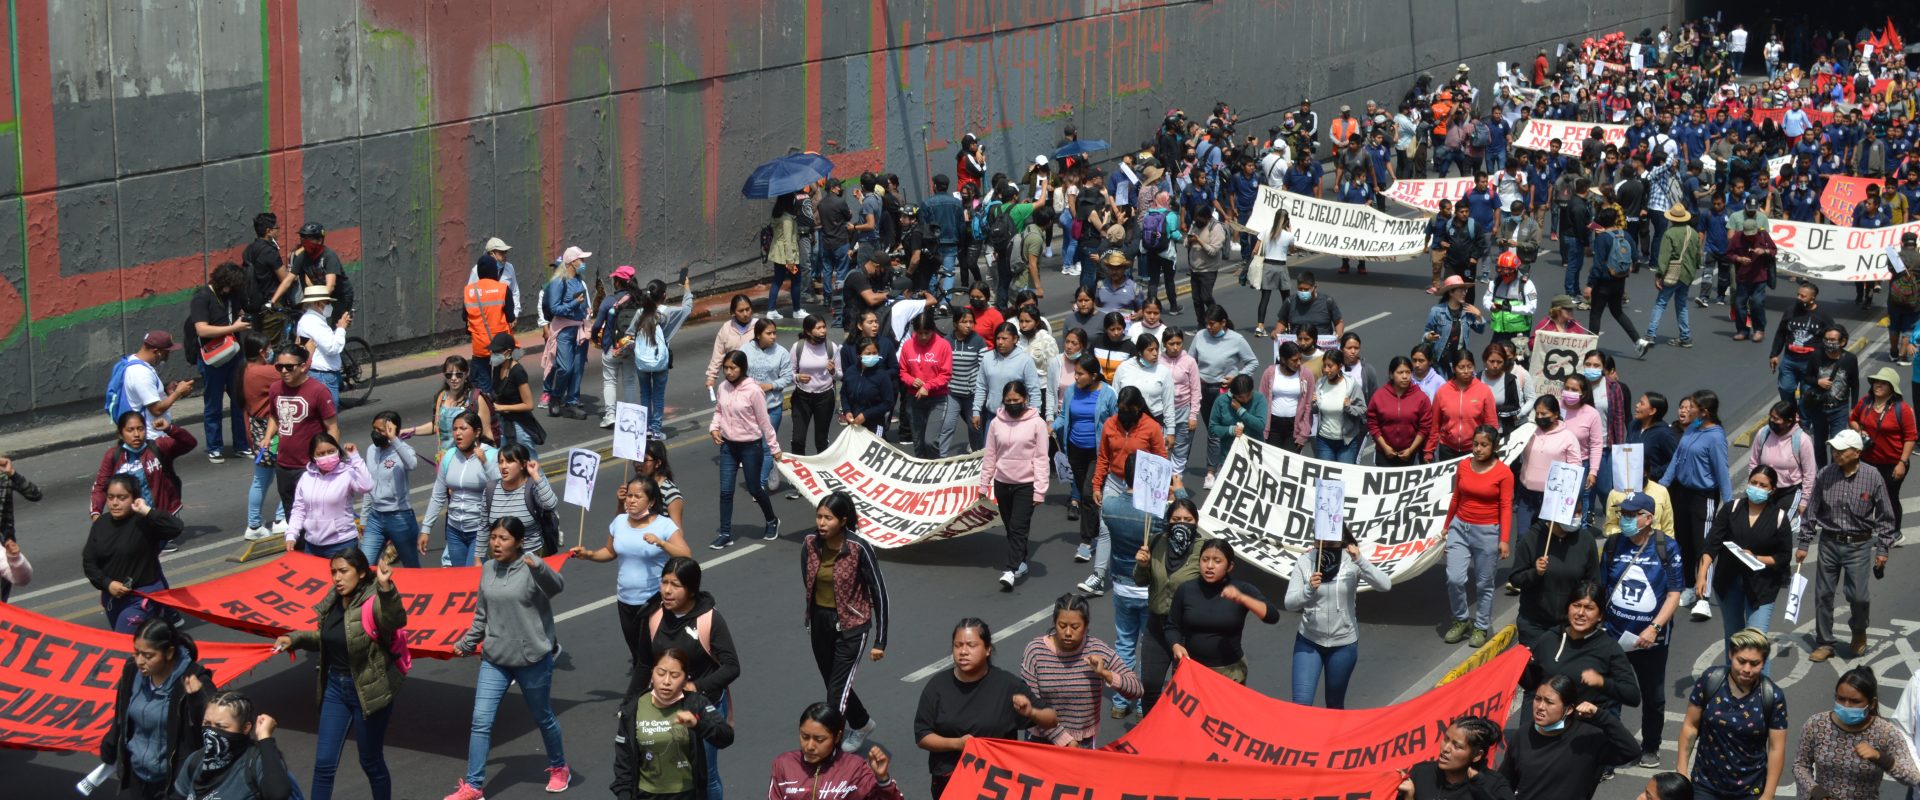 Alumnas de las normales rurales durante la manifestación del 2 de octubre en la Ciudad de México. CIMACFoto: Diana Hernández Gómez